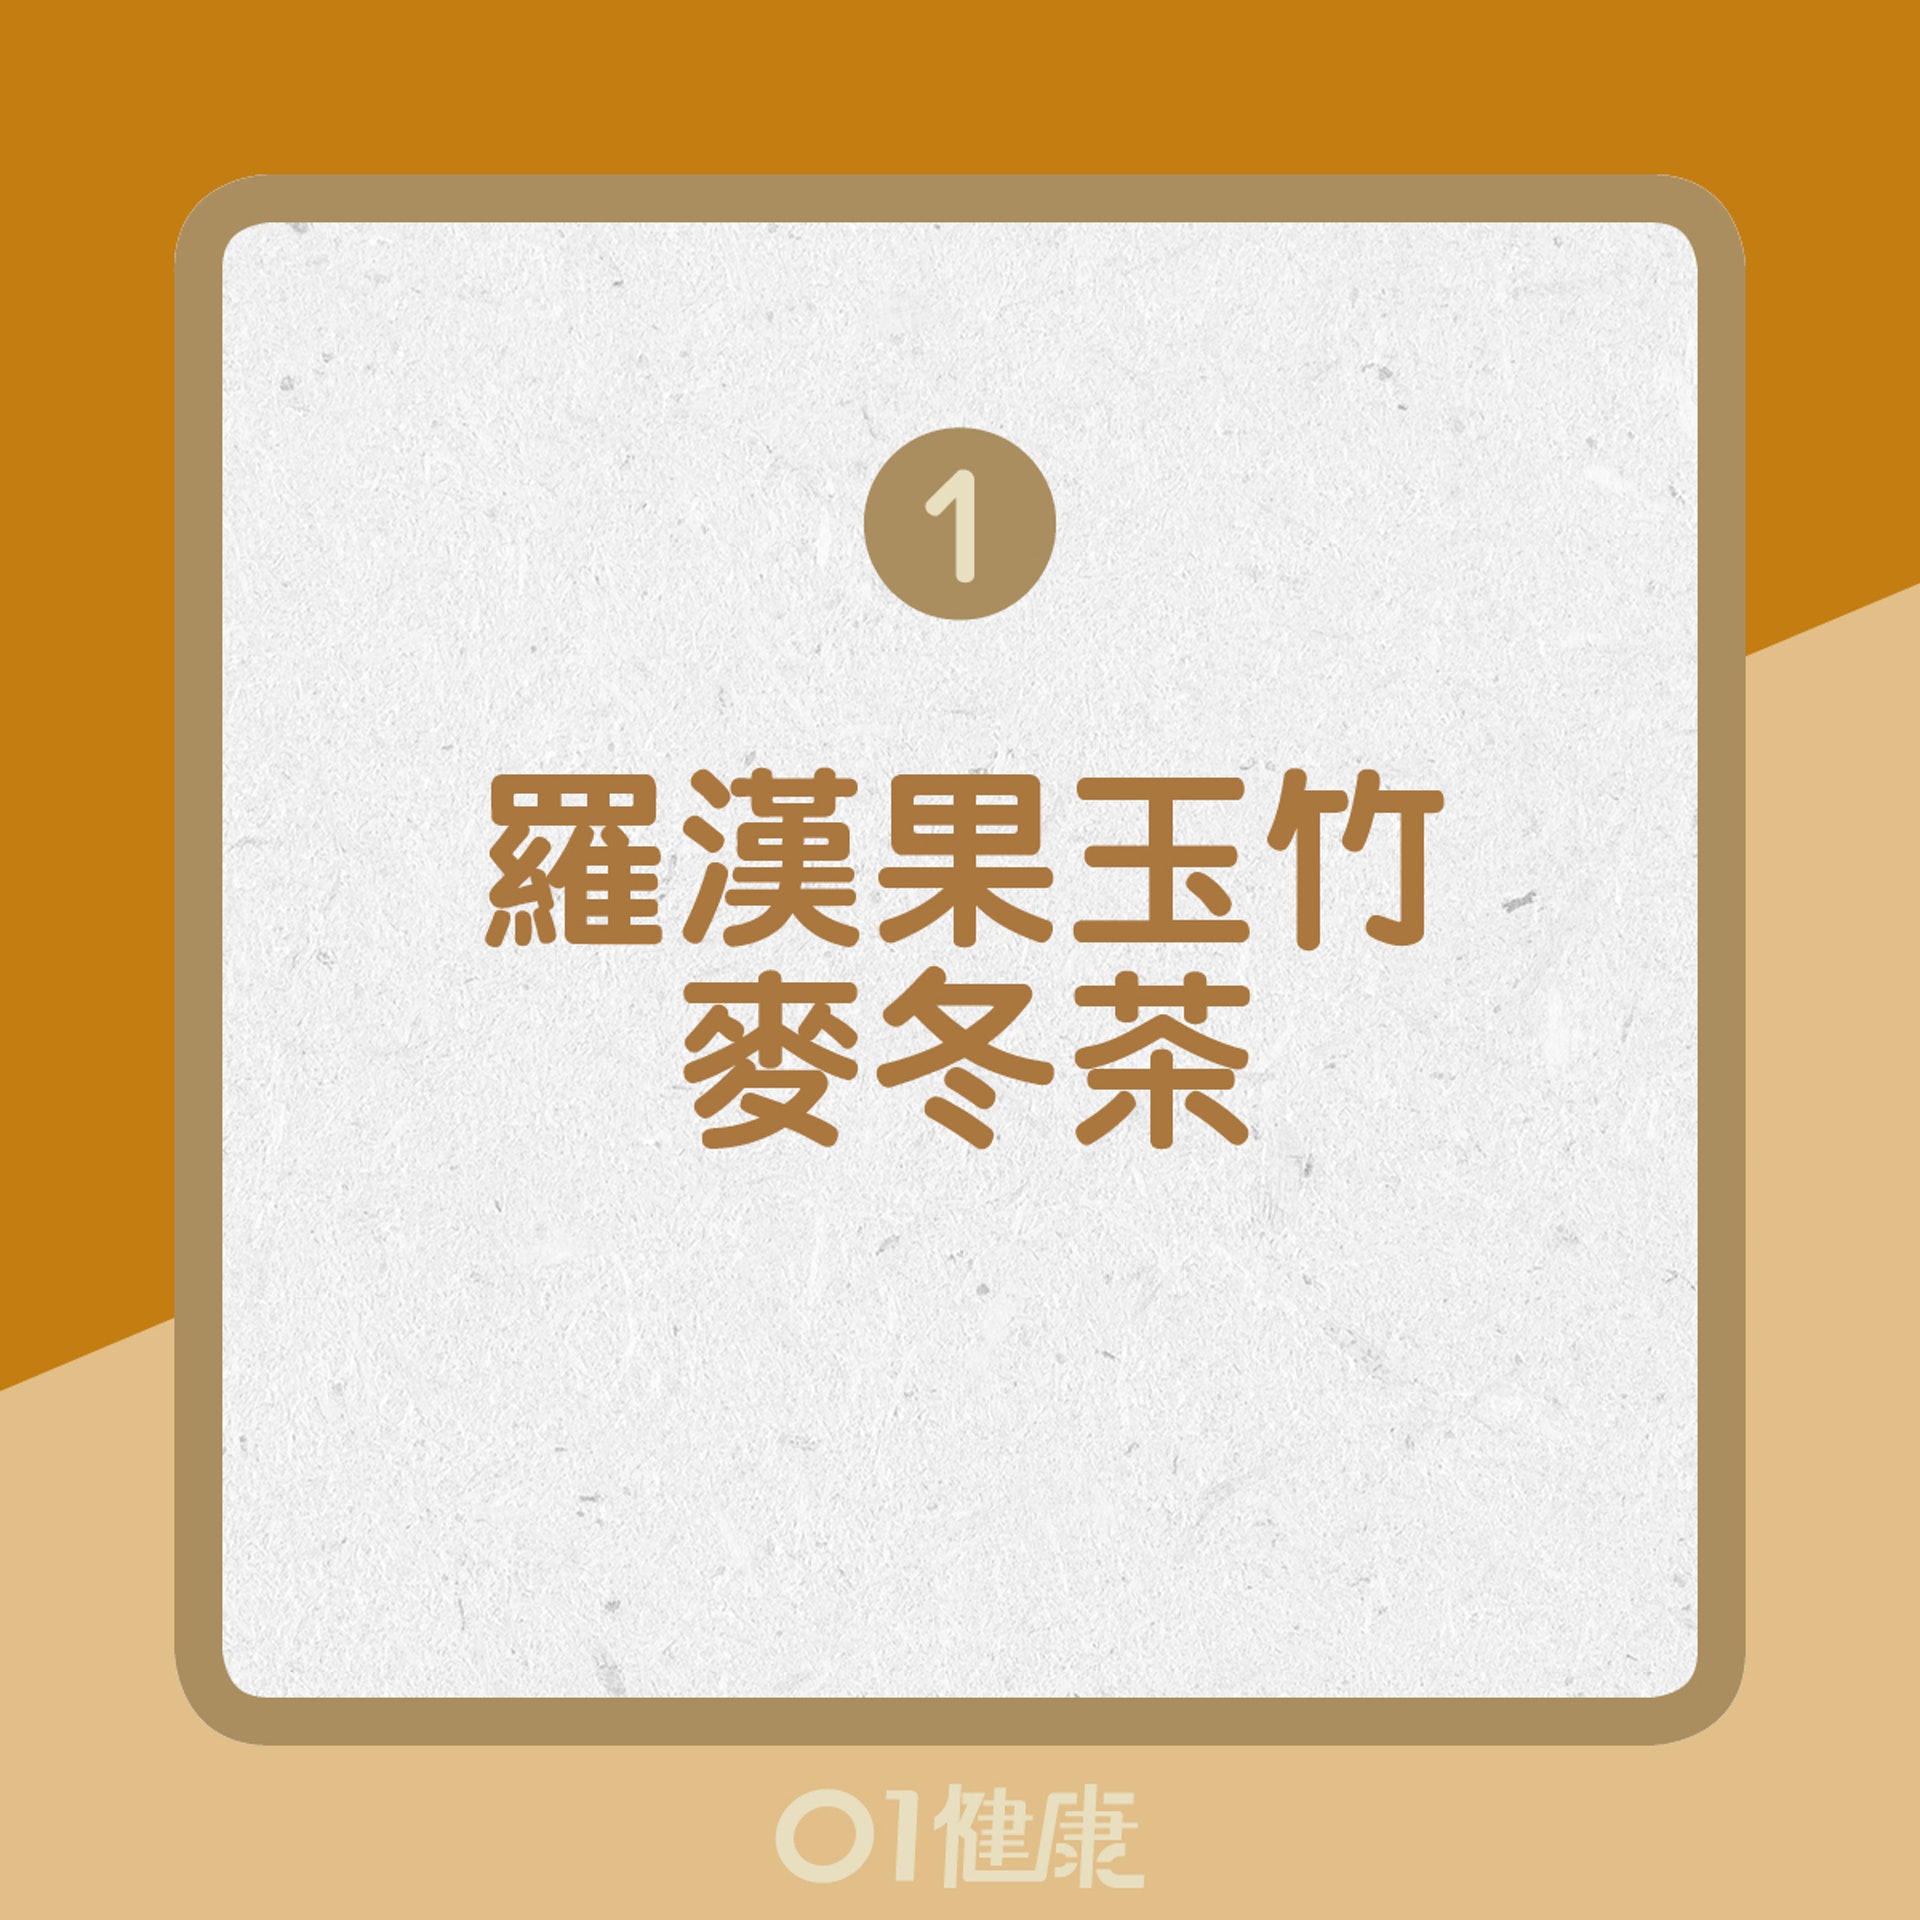 1.	羅漢果玉竹麥冬茶（01製圖）